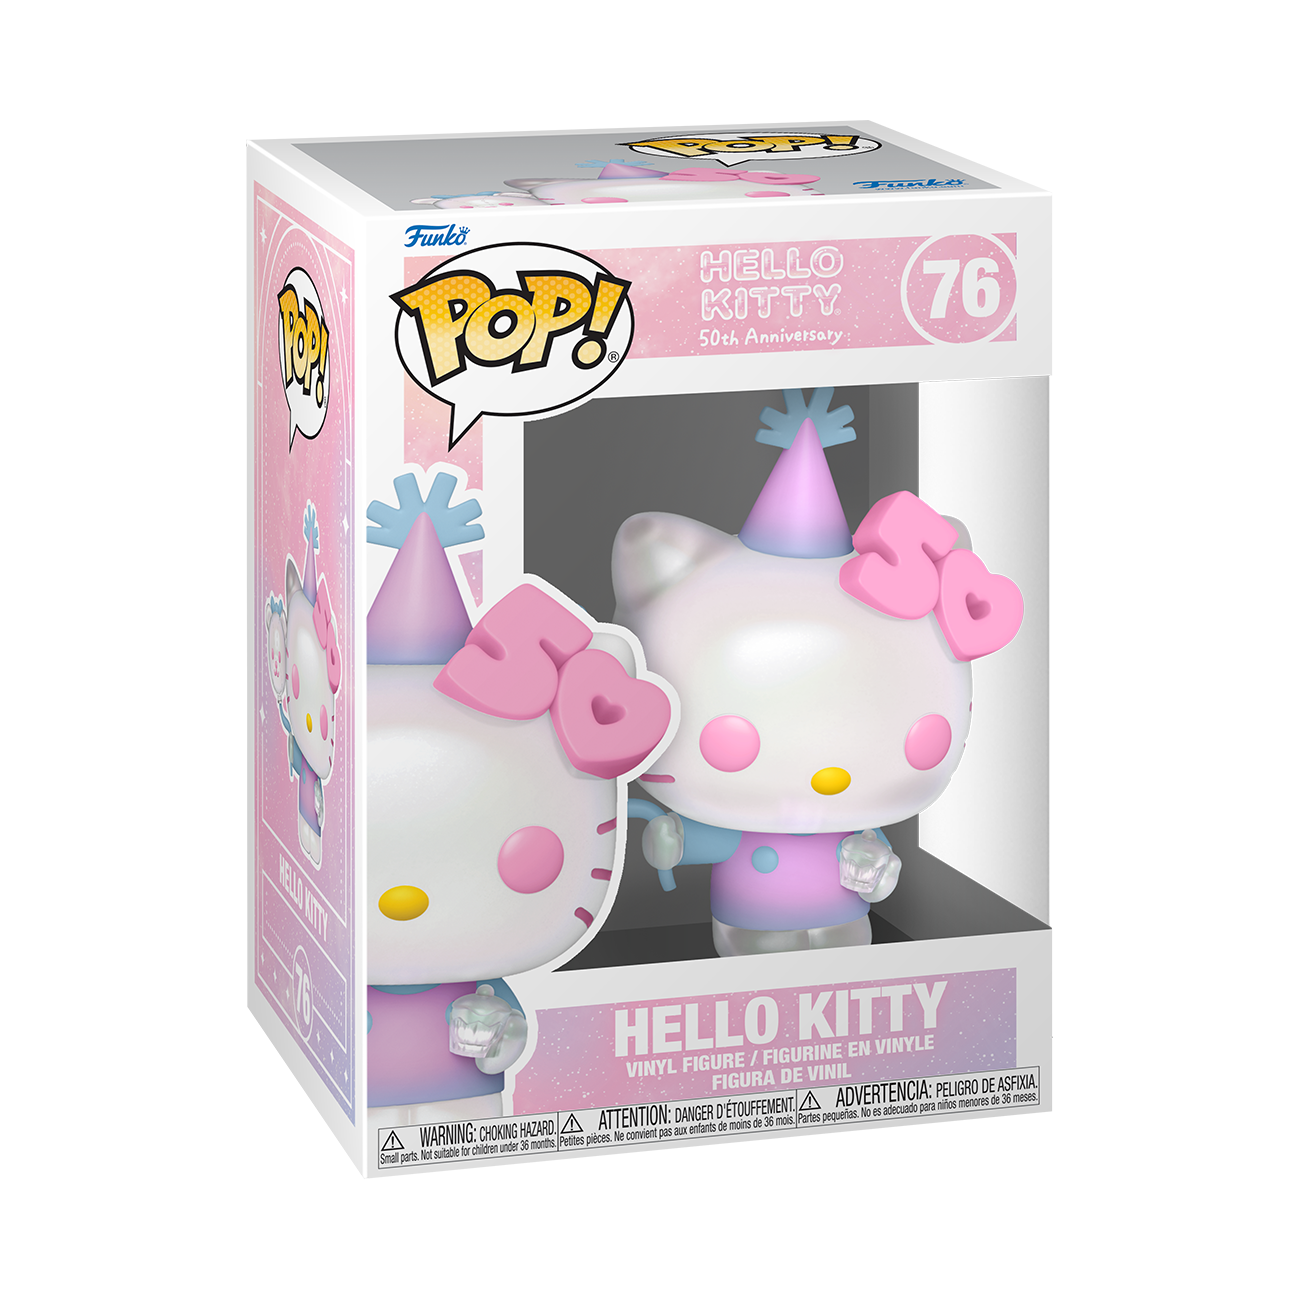 Sanrio Hello Kitty and Friends Hello Kitty Pop! Vinyl Figure